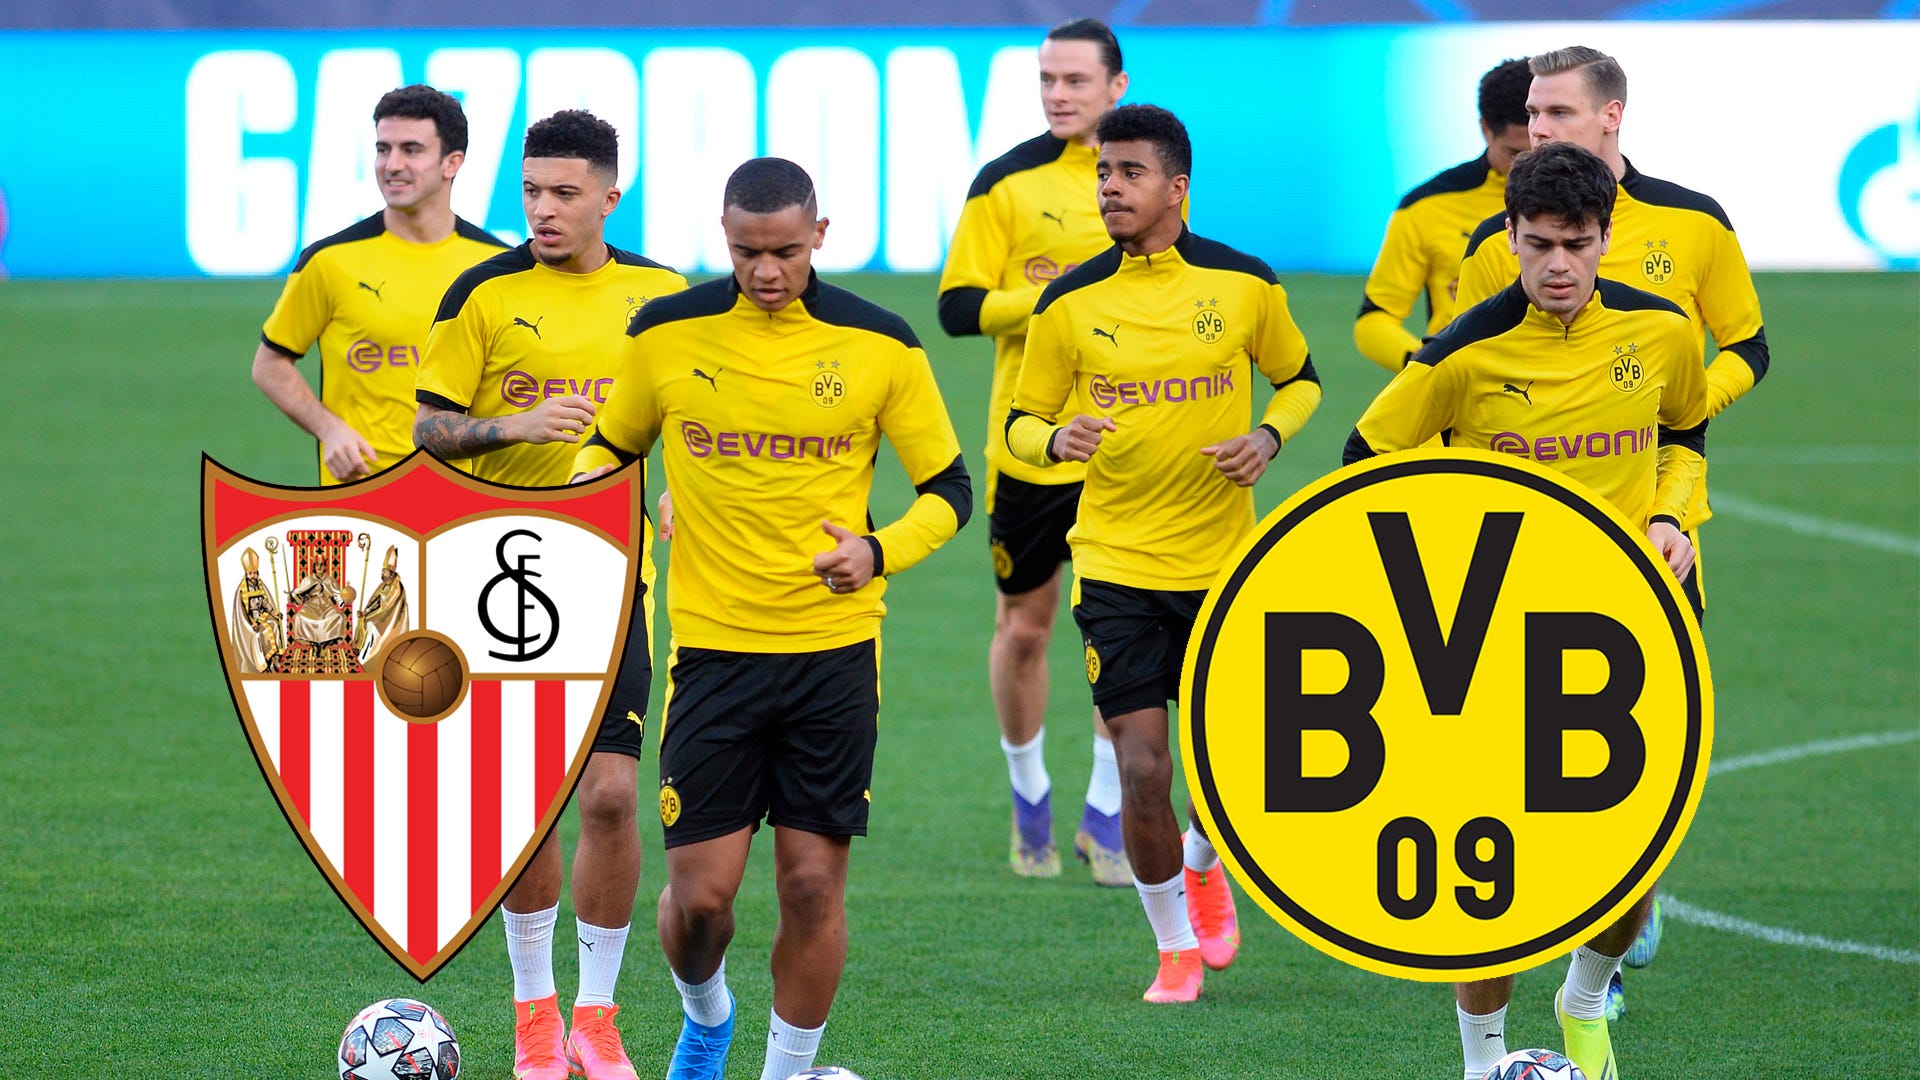 Header GettyImages Sevilla FC BVB Borussia Dortmund training champions league 2020 2021 wer zeigt / überträgt tv live-stream live highlights ticker aufstellungen